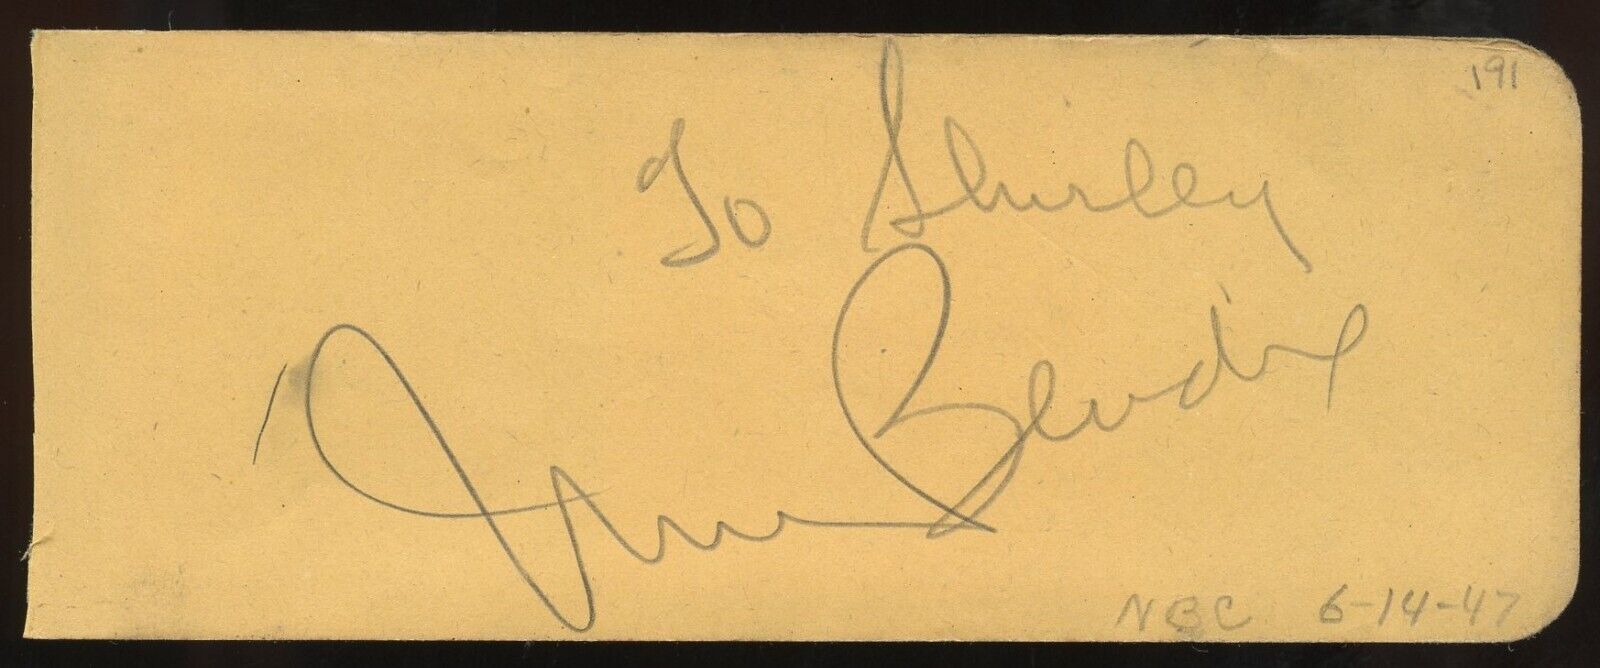 William Bendix d1964 signed 2x5 cut autograph on 6-14-47 at NBC Studios LA